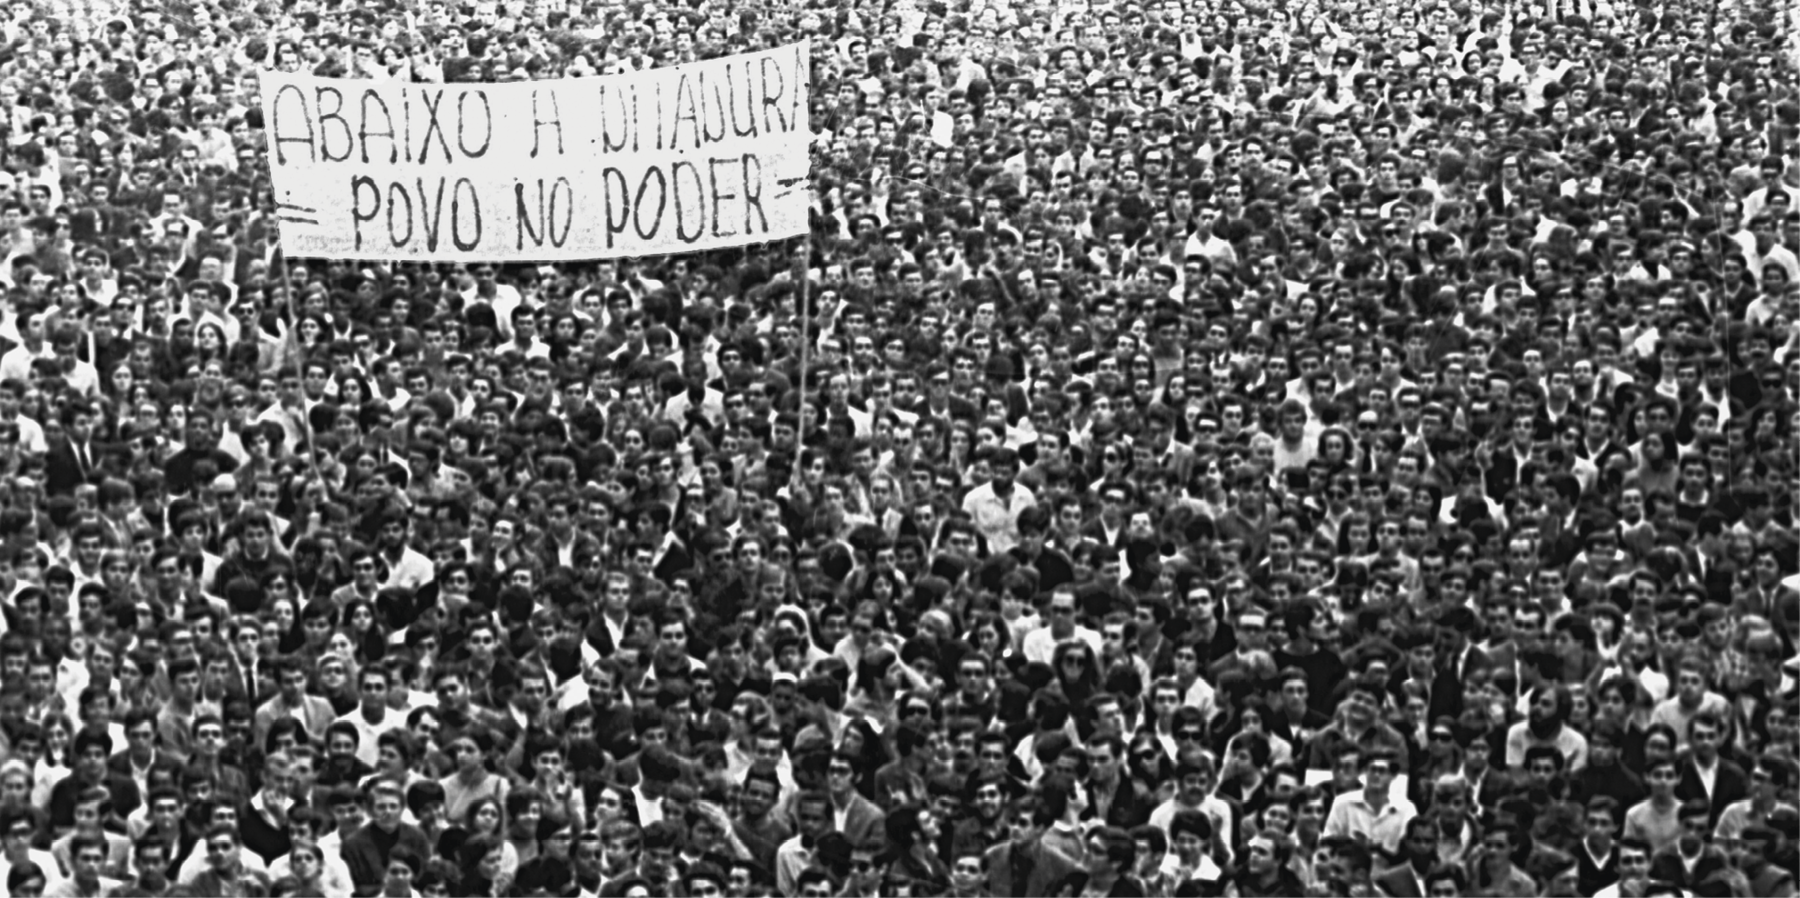 Fotografia em preto e branco. Multidão aglomerada em uma passeata. No centro, um grande cartaz com a frase: ABAIXO A DITADURA – POVO NO PODER.